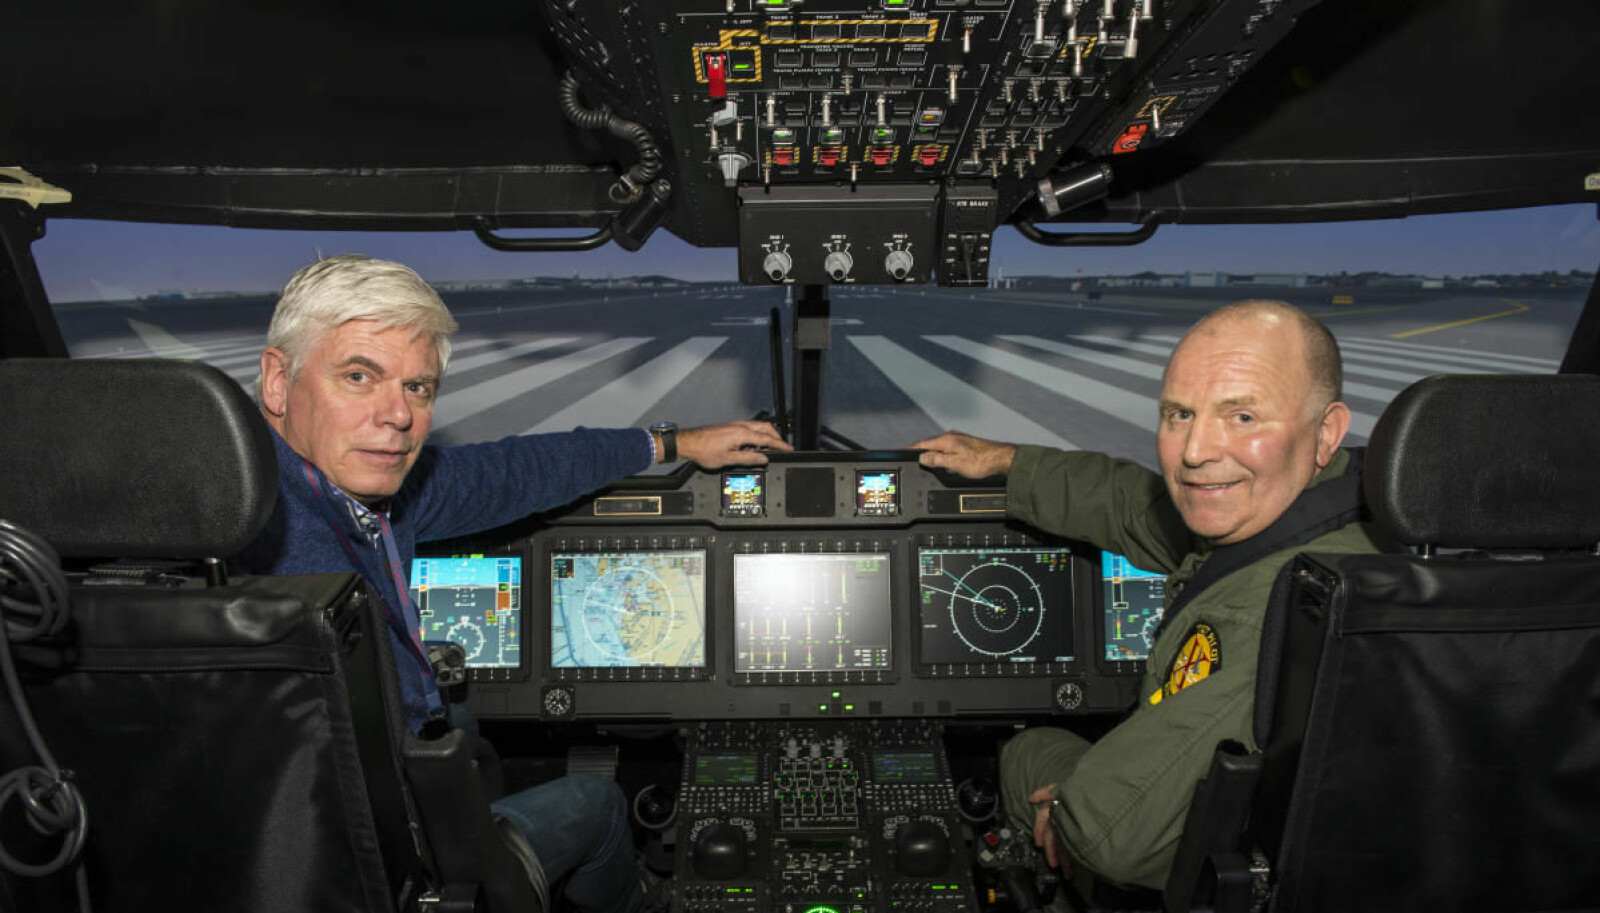 SIMULATOR: Vi Menns Håkon Bonafede og Sigmund Lockert i den avanserte simulatoren hvor Sea King pilotene får konverteringstreningen.